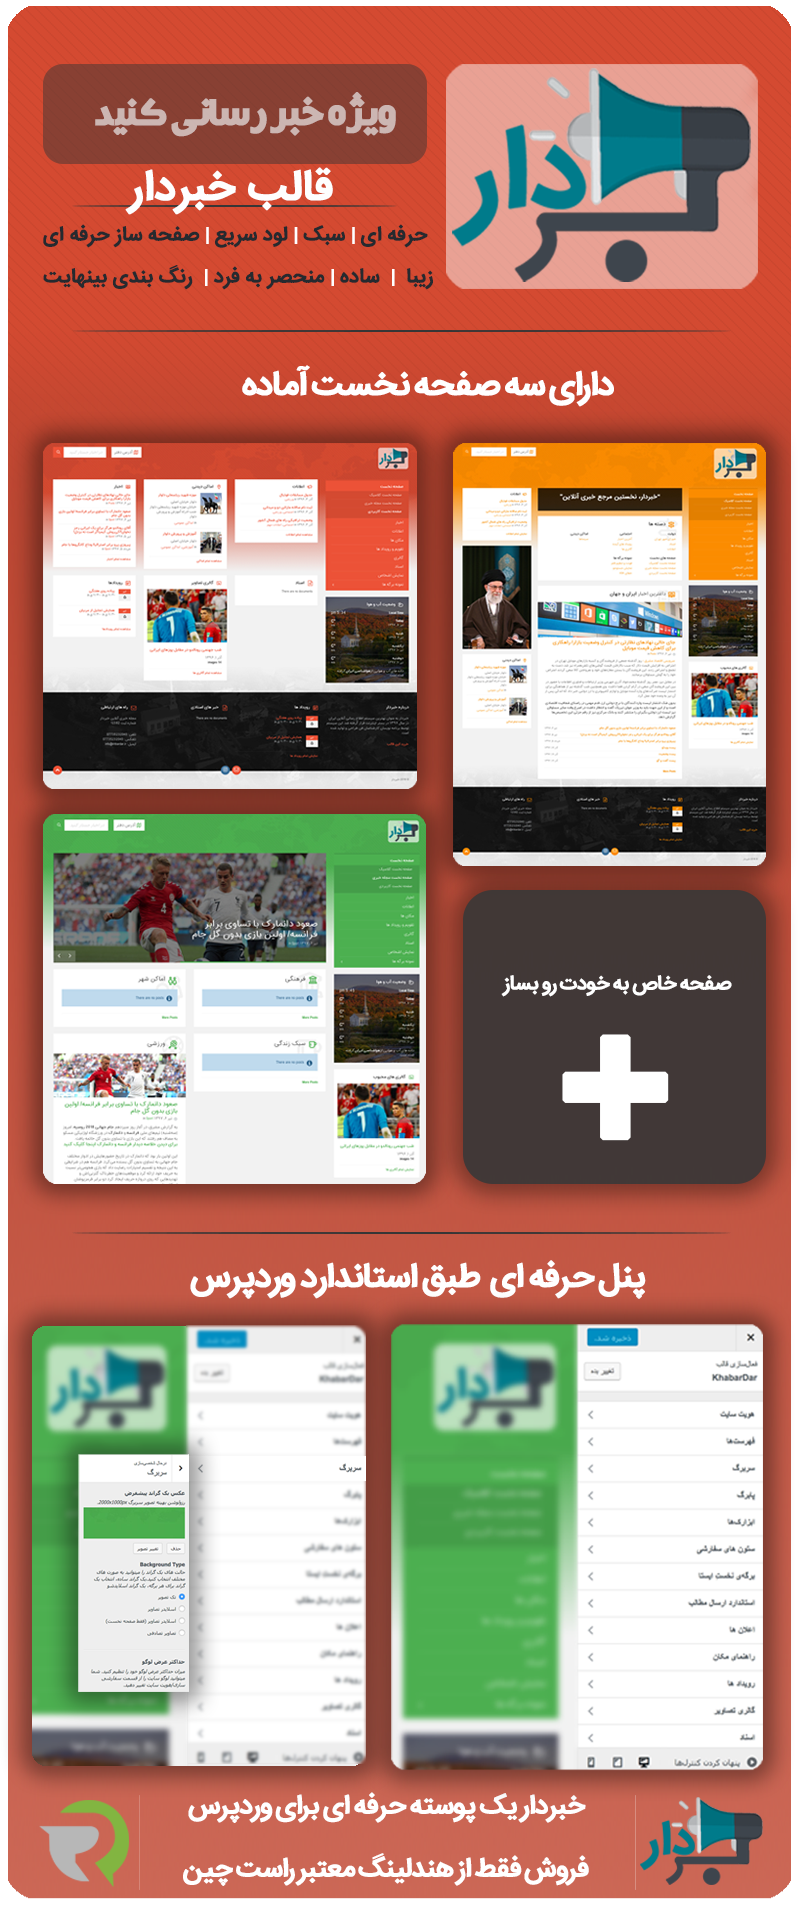 قالب وردپرس خبردار | قالب وردپرس خبری ایرانی با طراحی مینیمال و مدرن